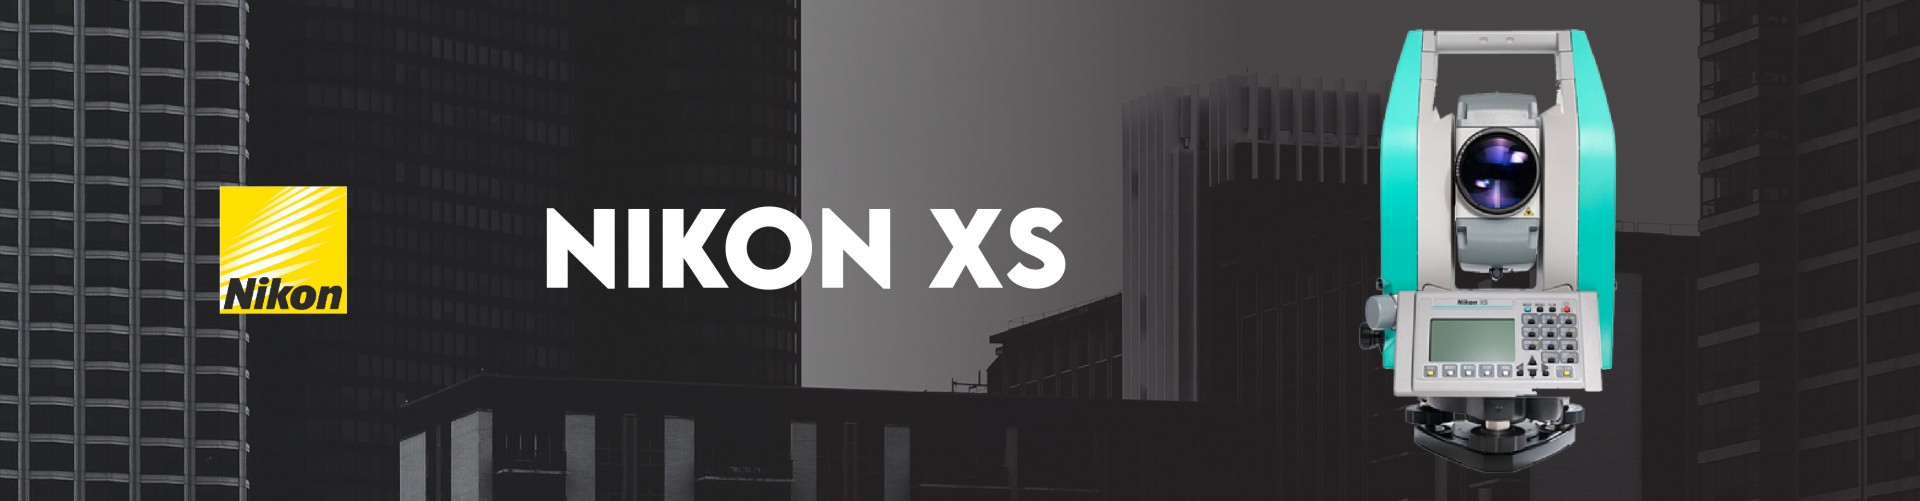 Nikon XS